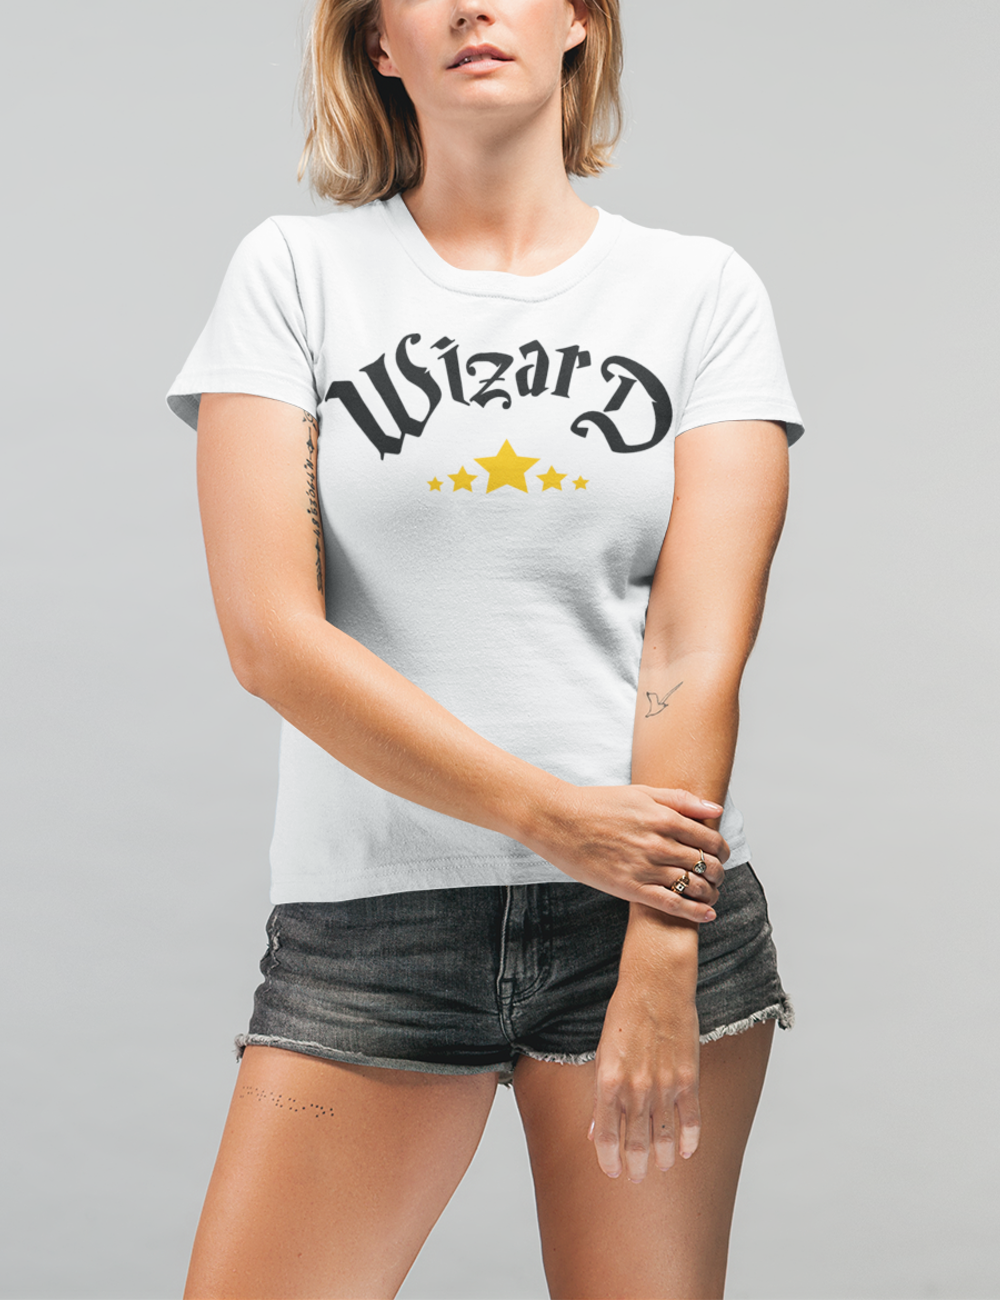 Wizard | Women's Style T-Shirt OniTakai